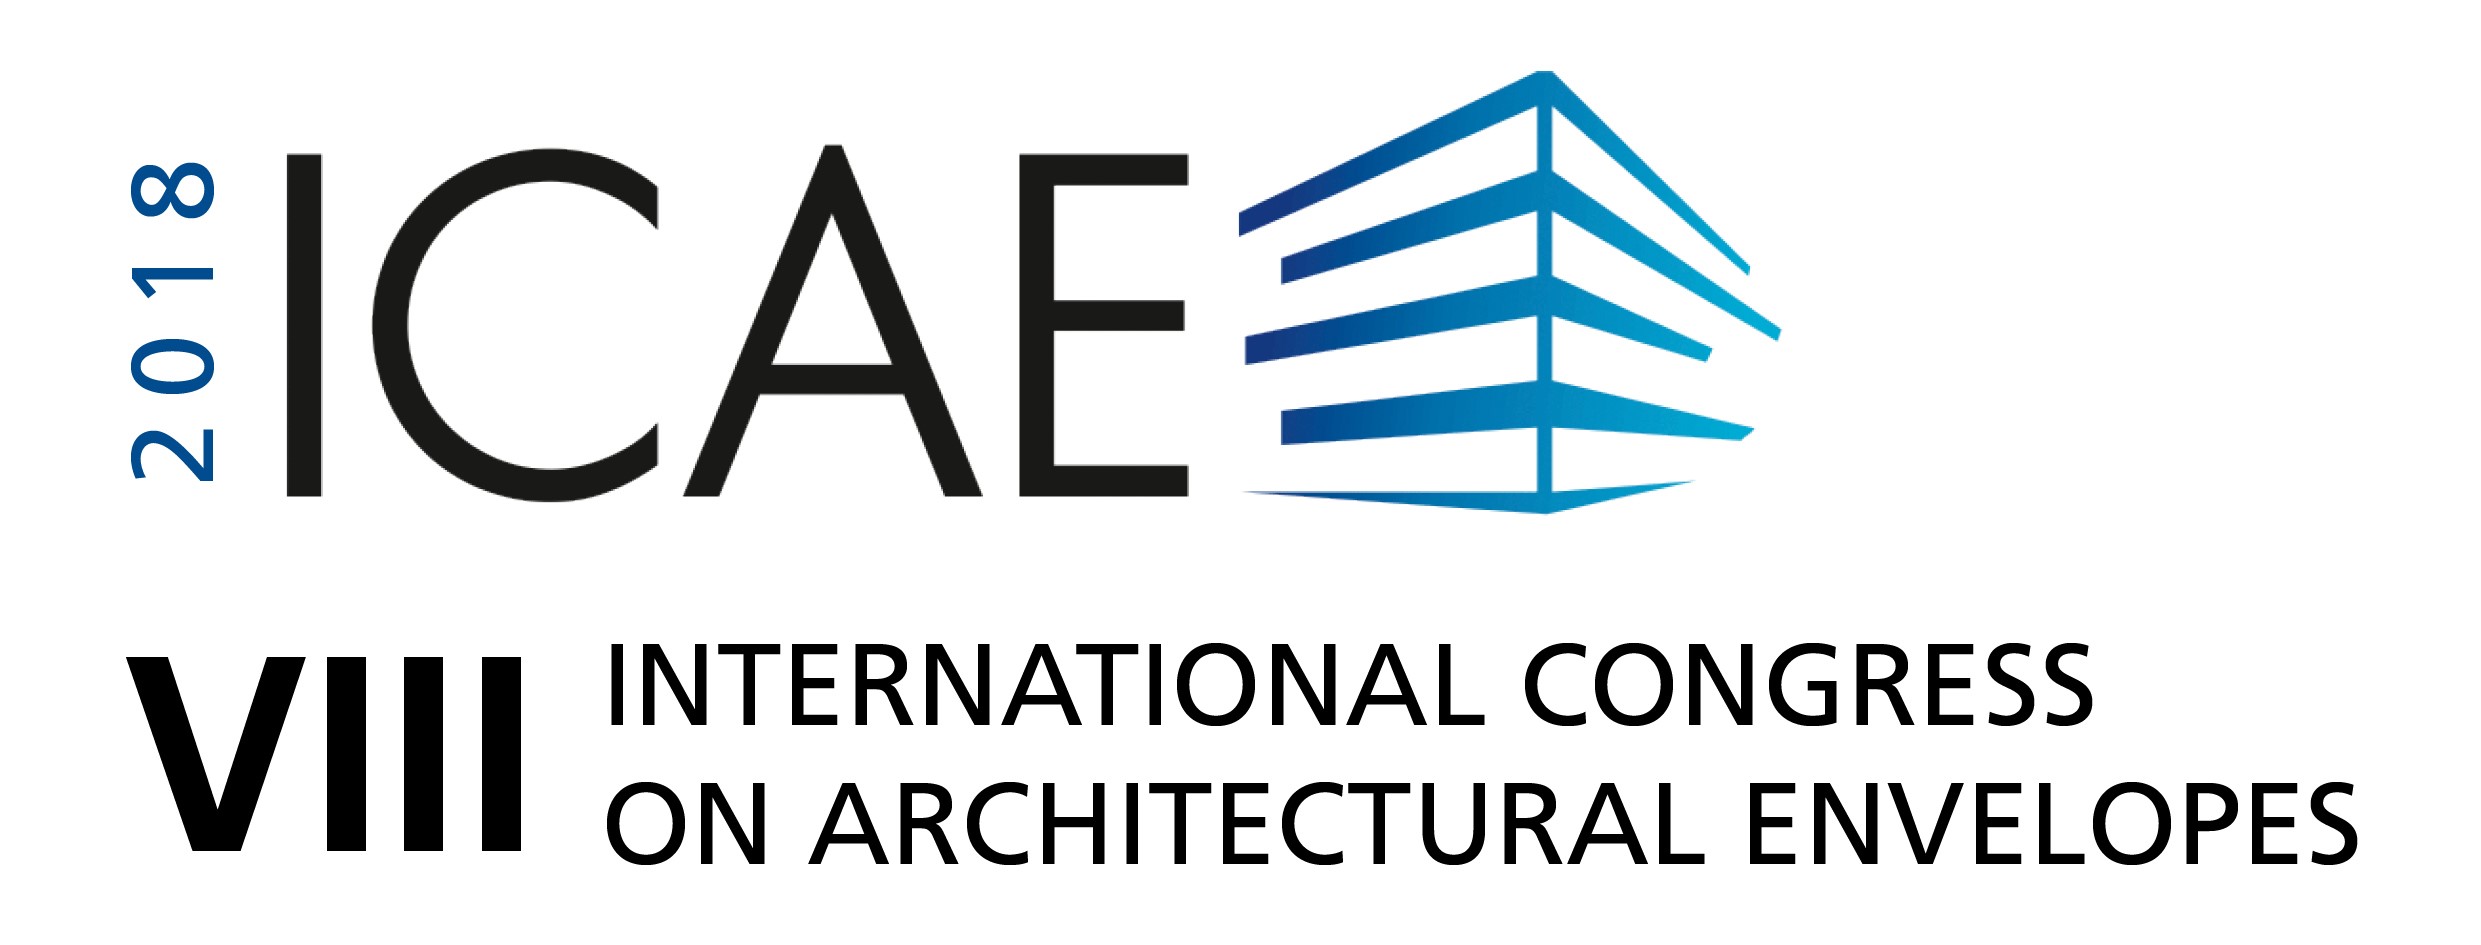 ICAE2018 logo en